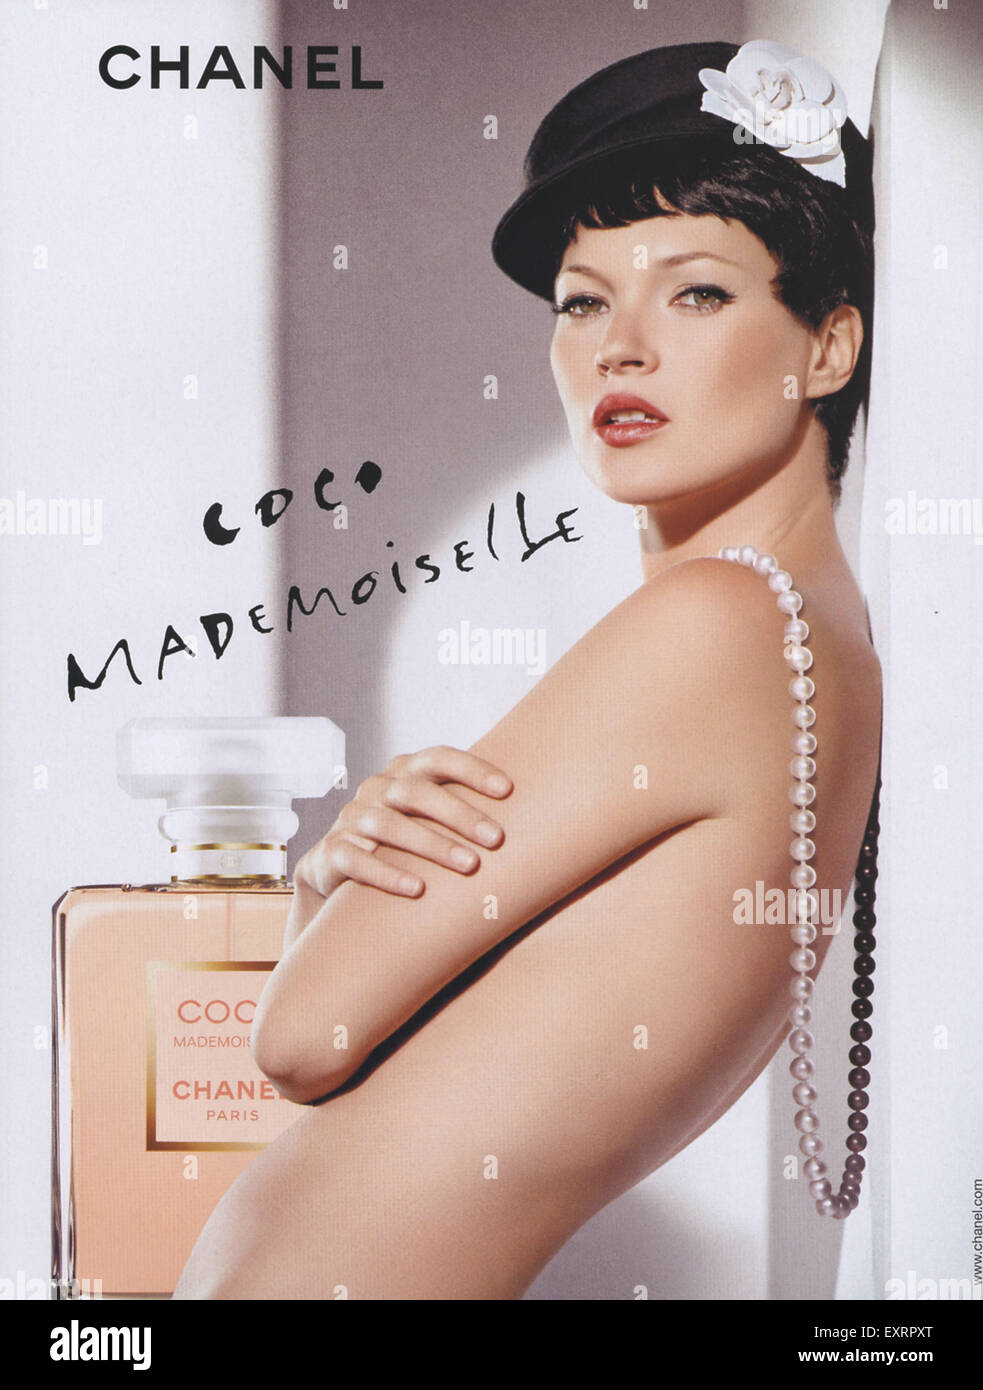 2000s UK Chanel Coco Mademoiselle Magazine Advert Stock Photo - Alamy